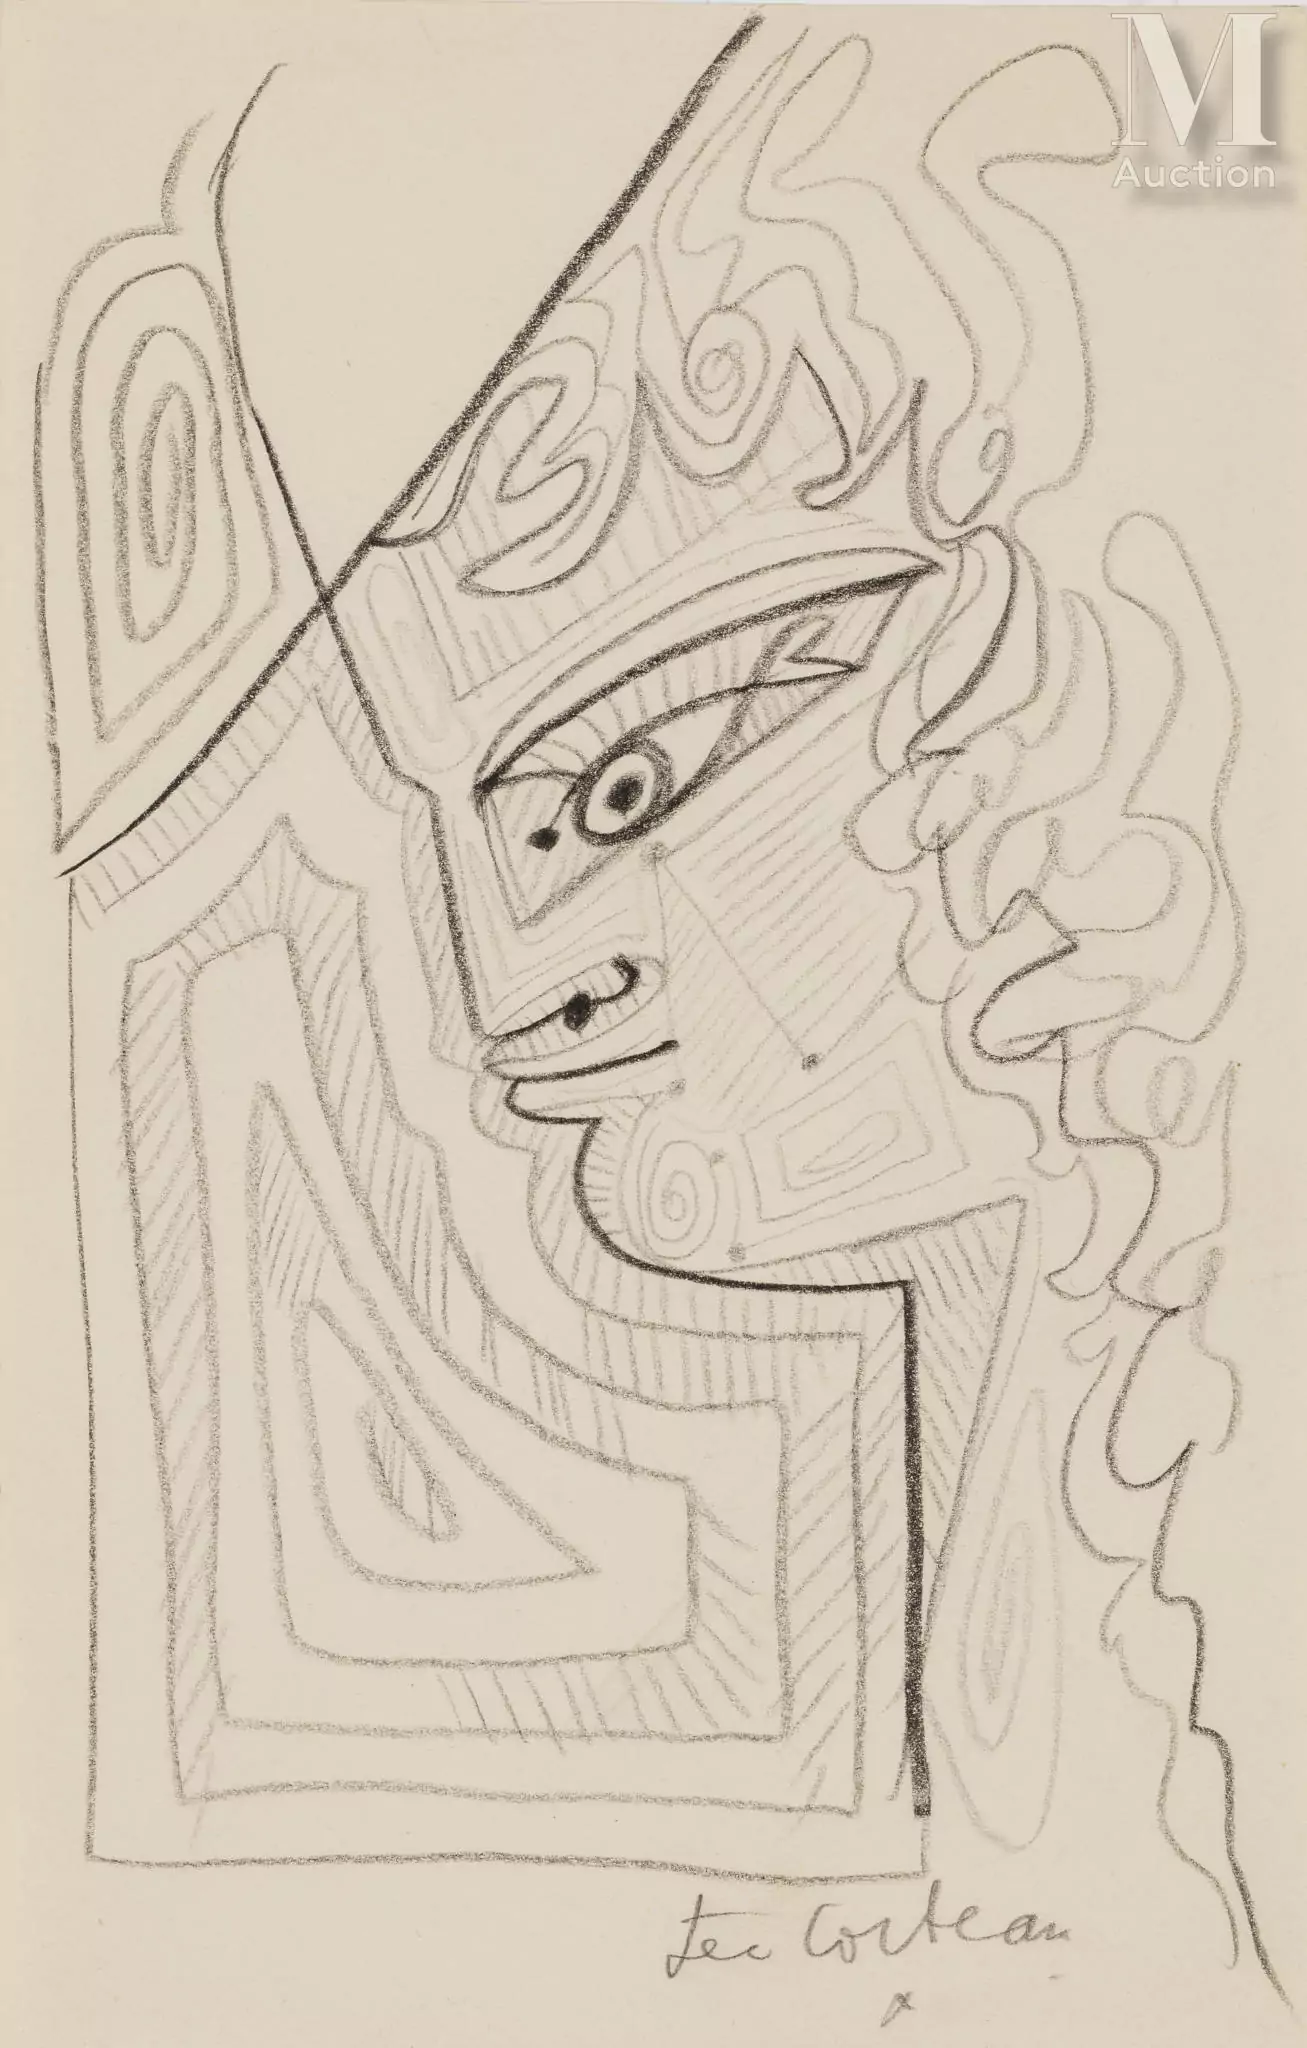 ean COCTEAU (Maisons-Laffite 1889 - Milly-la-Forêt 1963) Profil aux arabesques, circa 1957/58 Crayon sur papier